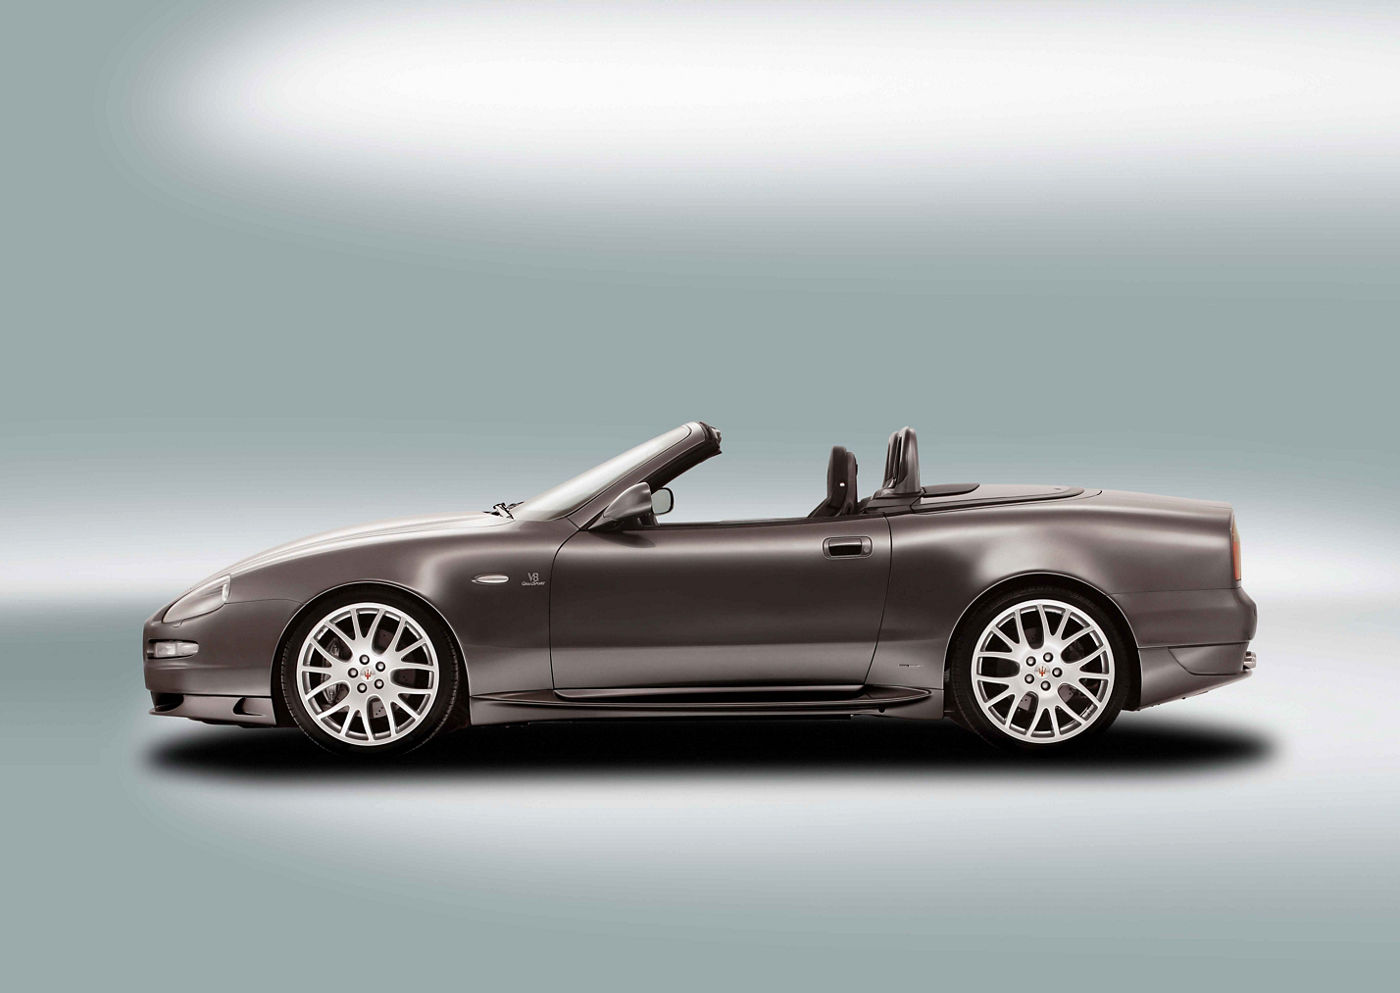 GranSport, GranSport Spyder - Gran Turismo models | Maserati